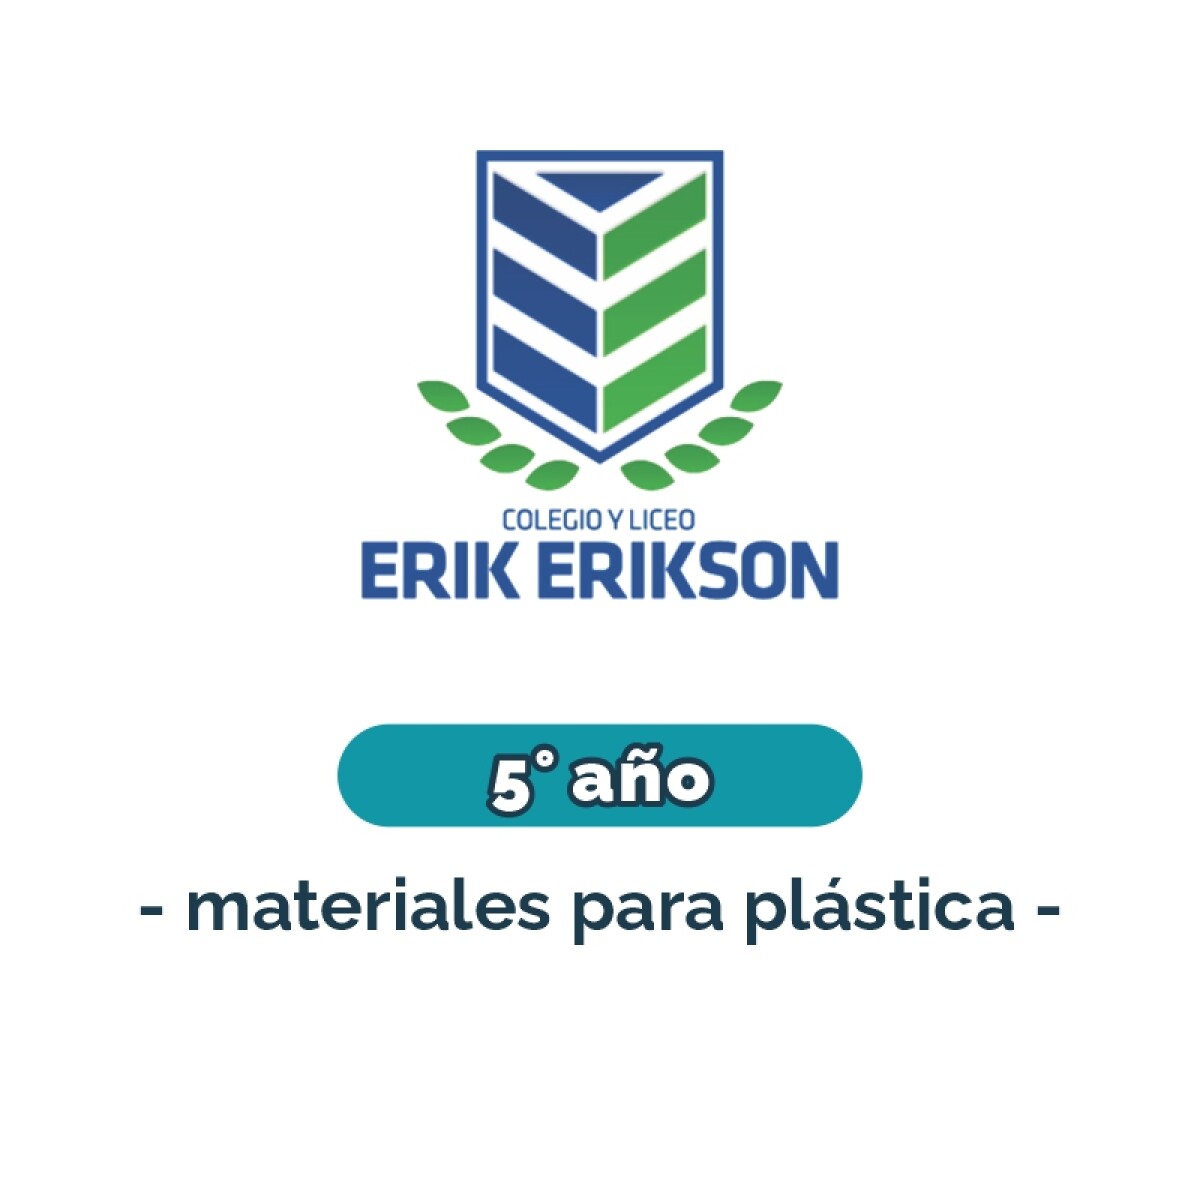 Materiales para plástica - Primaria 5° año Erik Erikson 